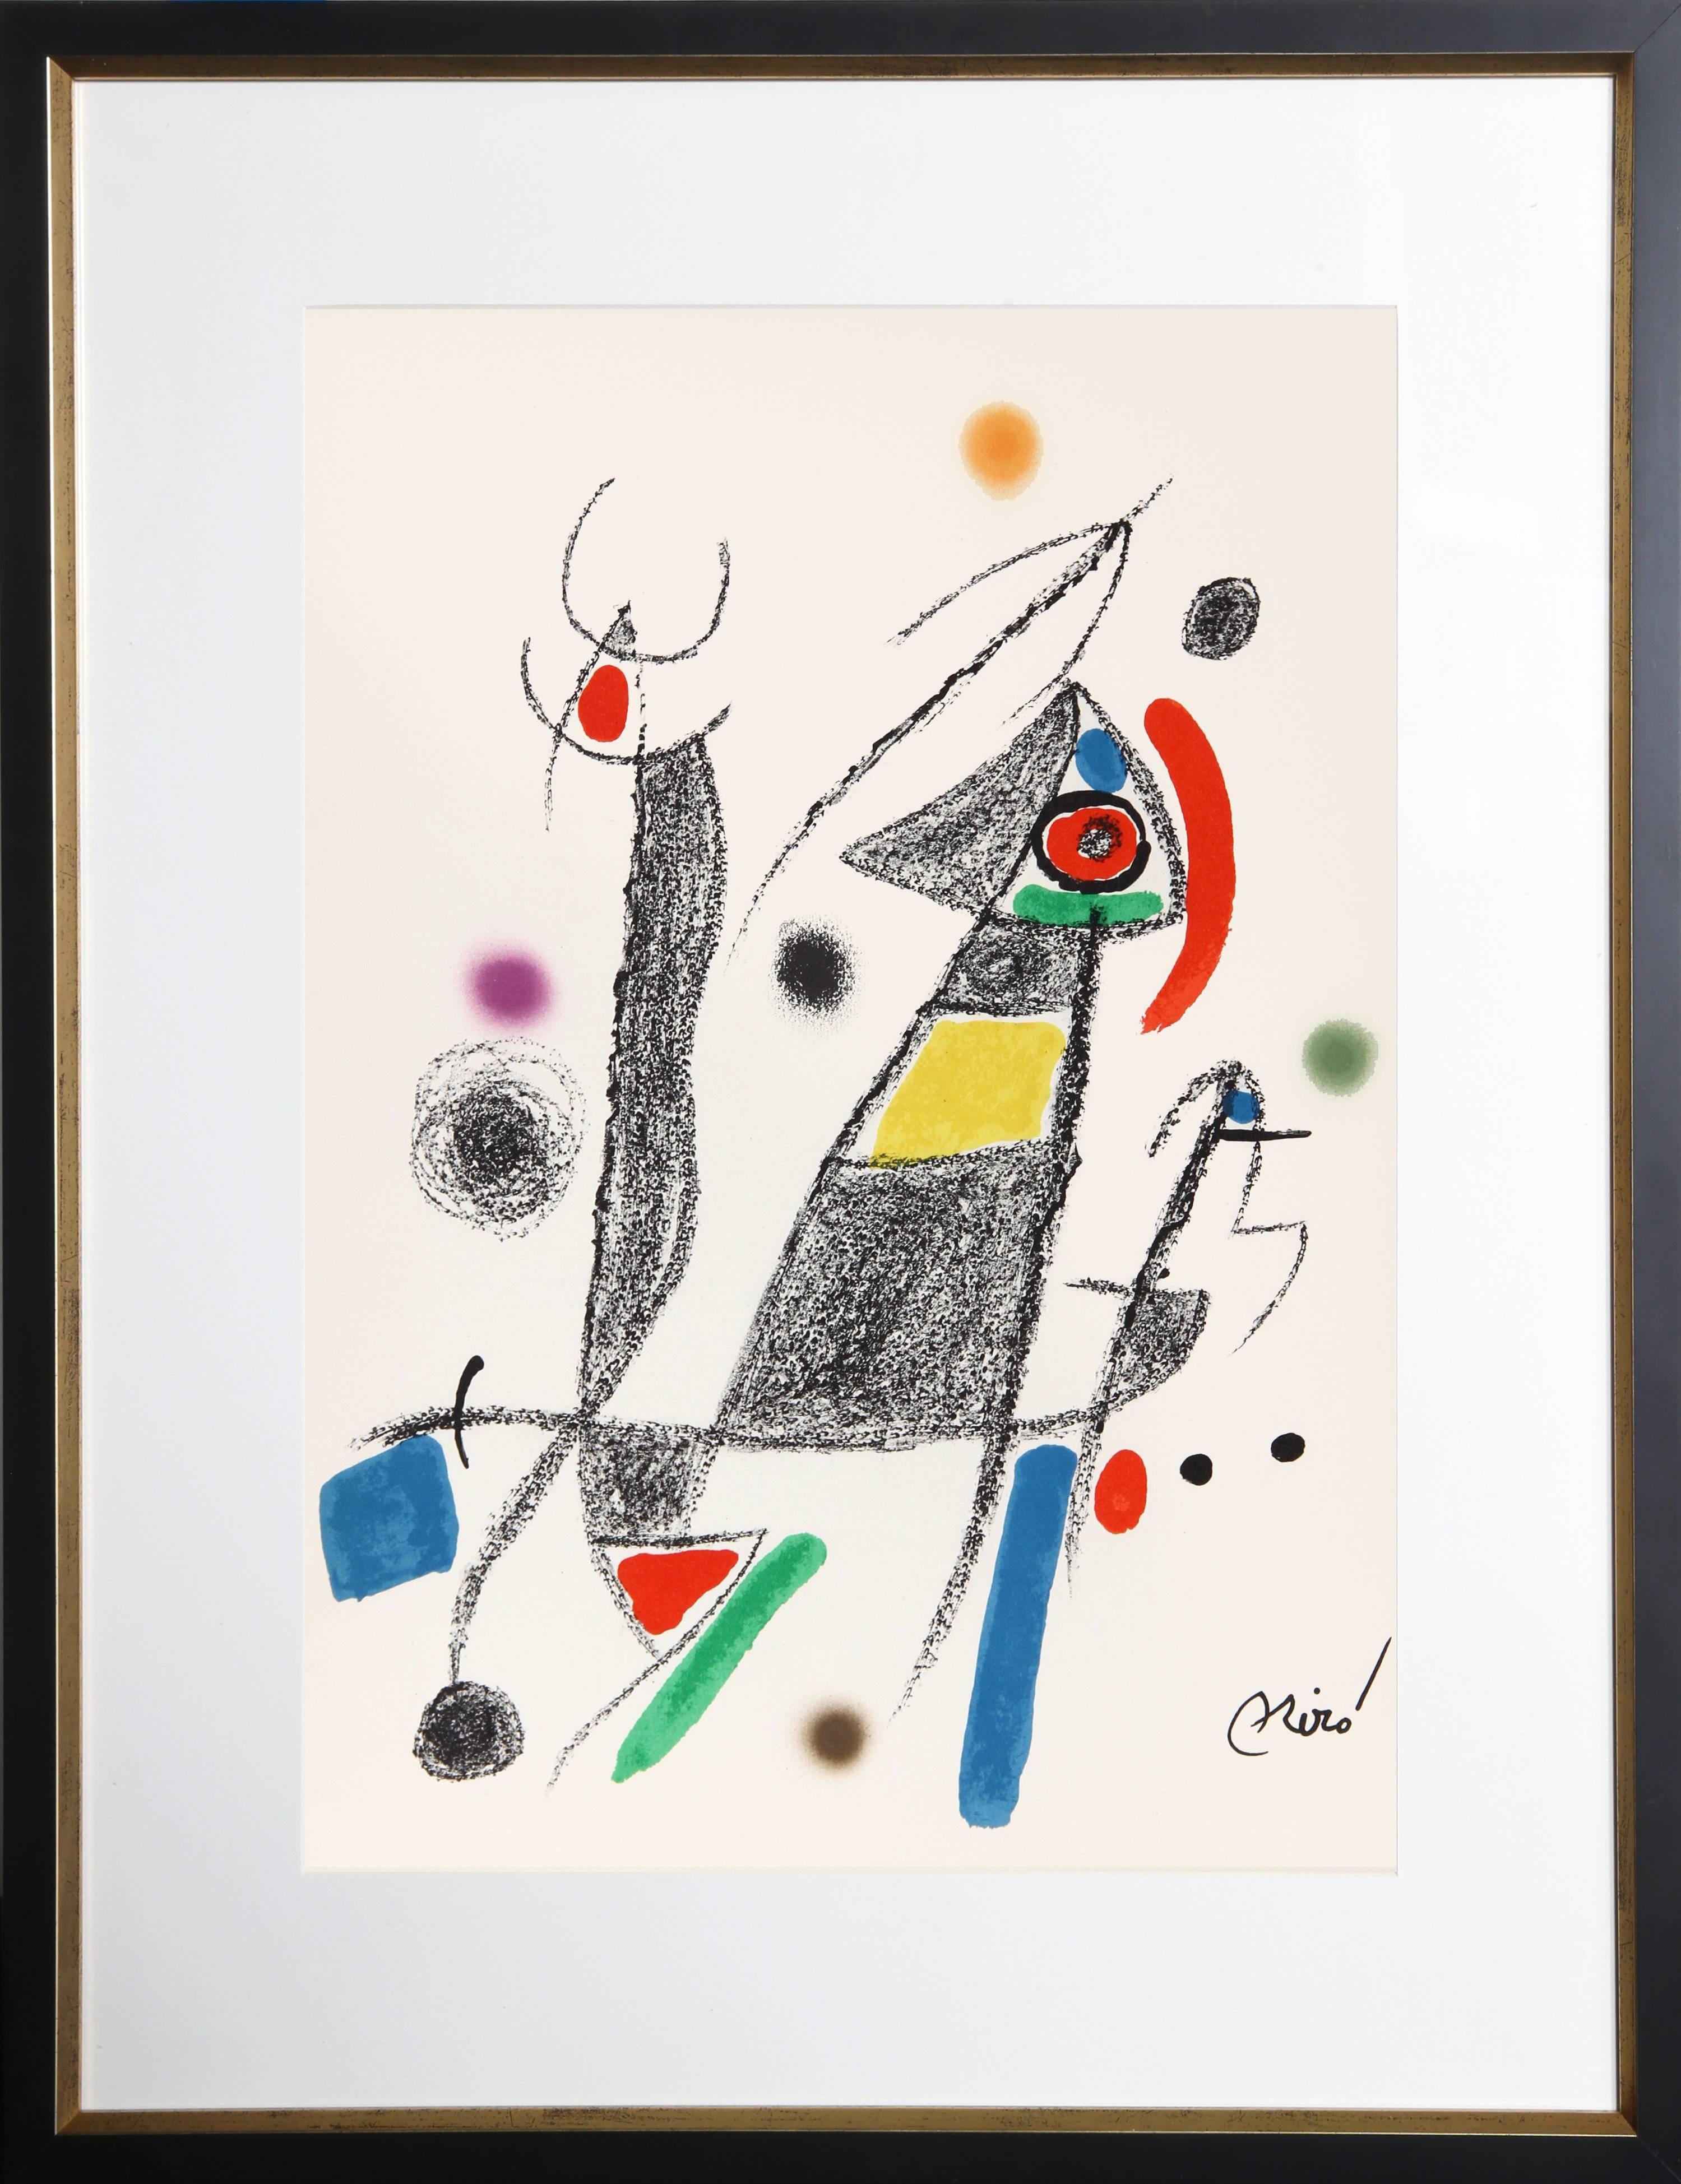 Abstract Print Joan Miró - Maravillas con Variaciones Acrosticas dans le Jardin de Miro (Number 8)